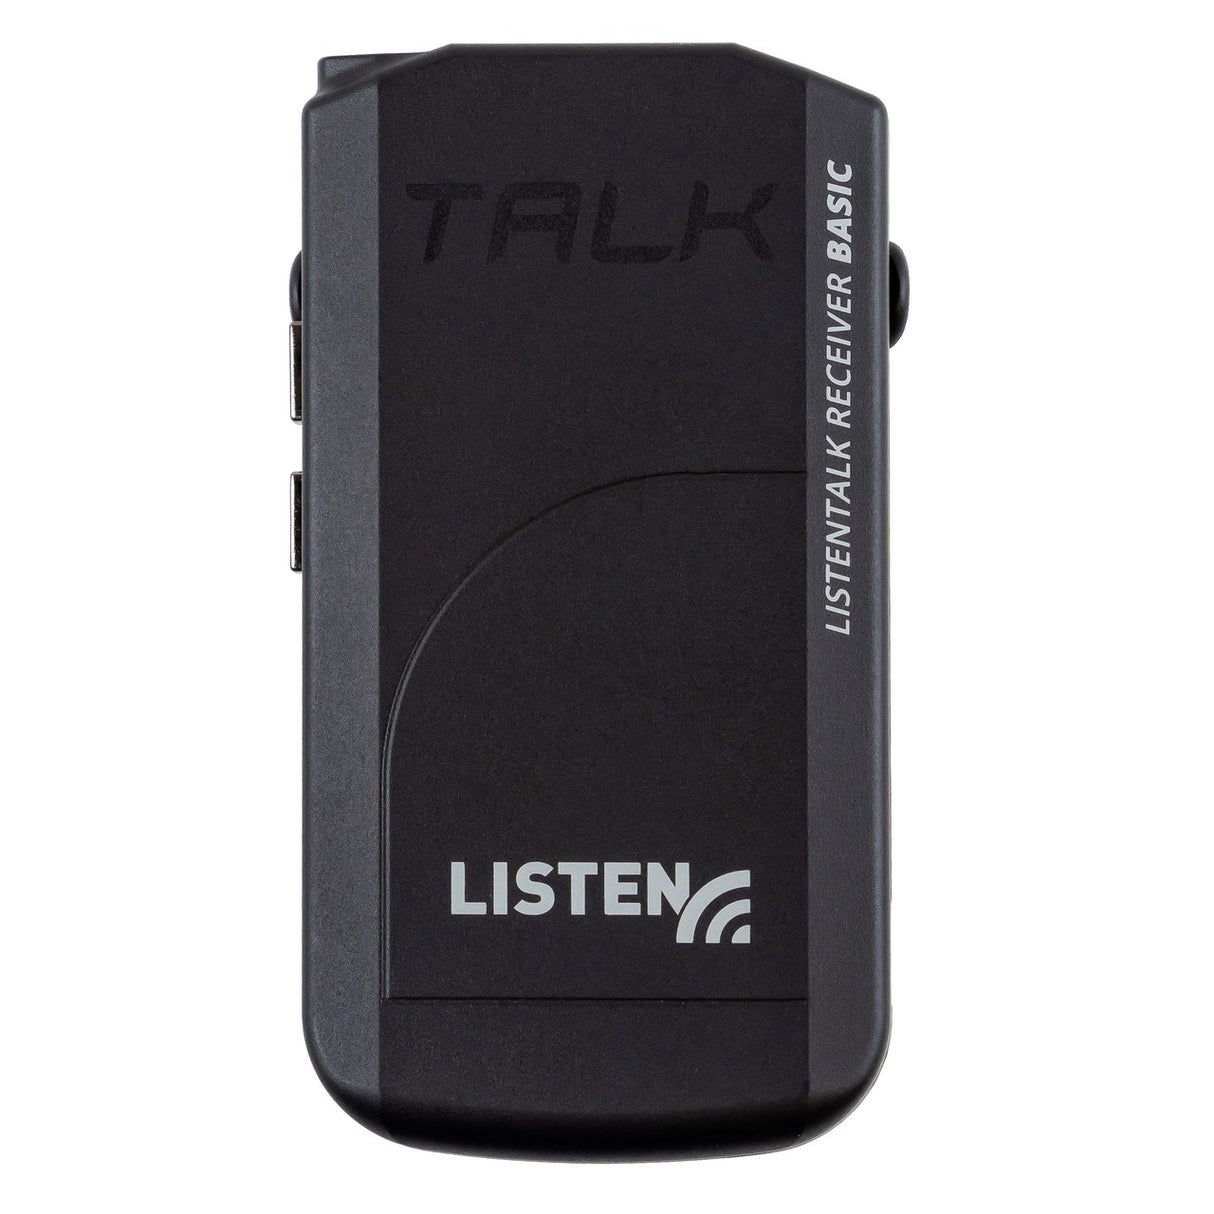 Listen Tech LKR-12-A0 ListenTALK Receiver Basic